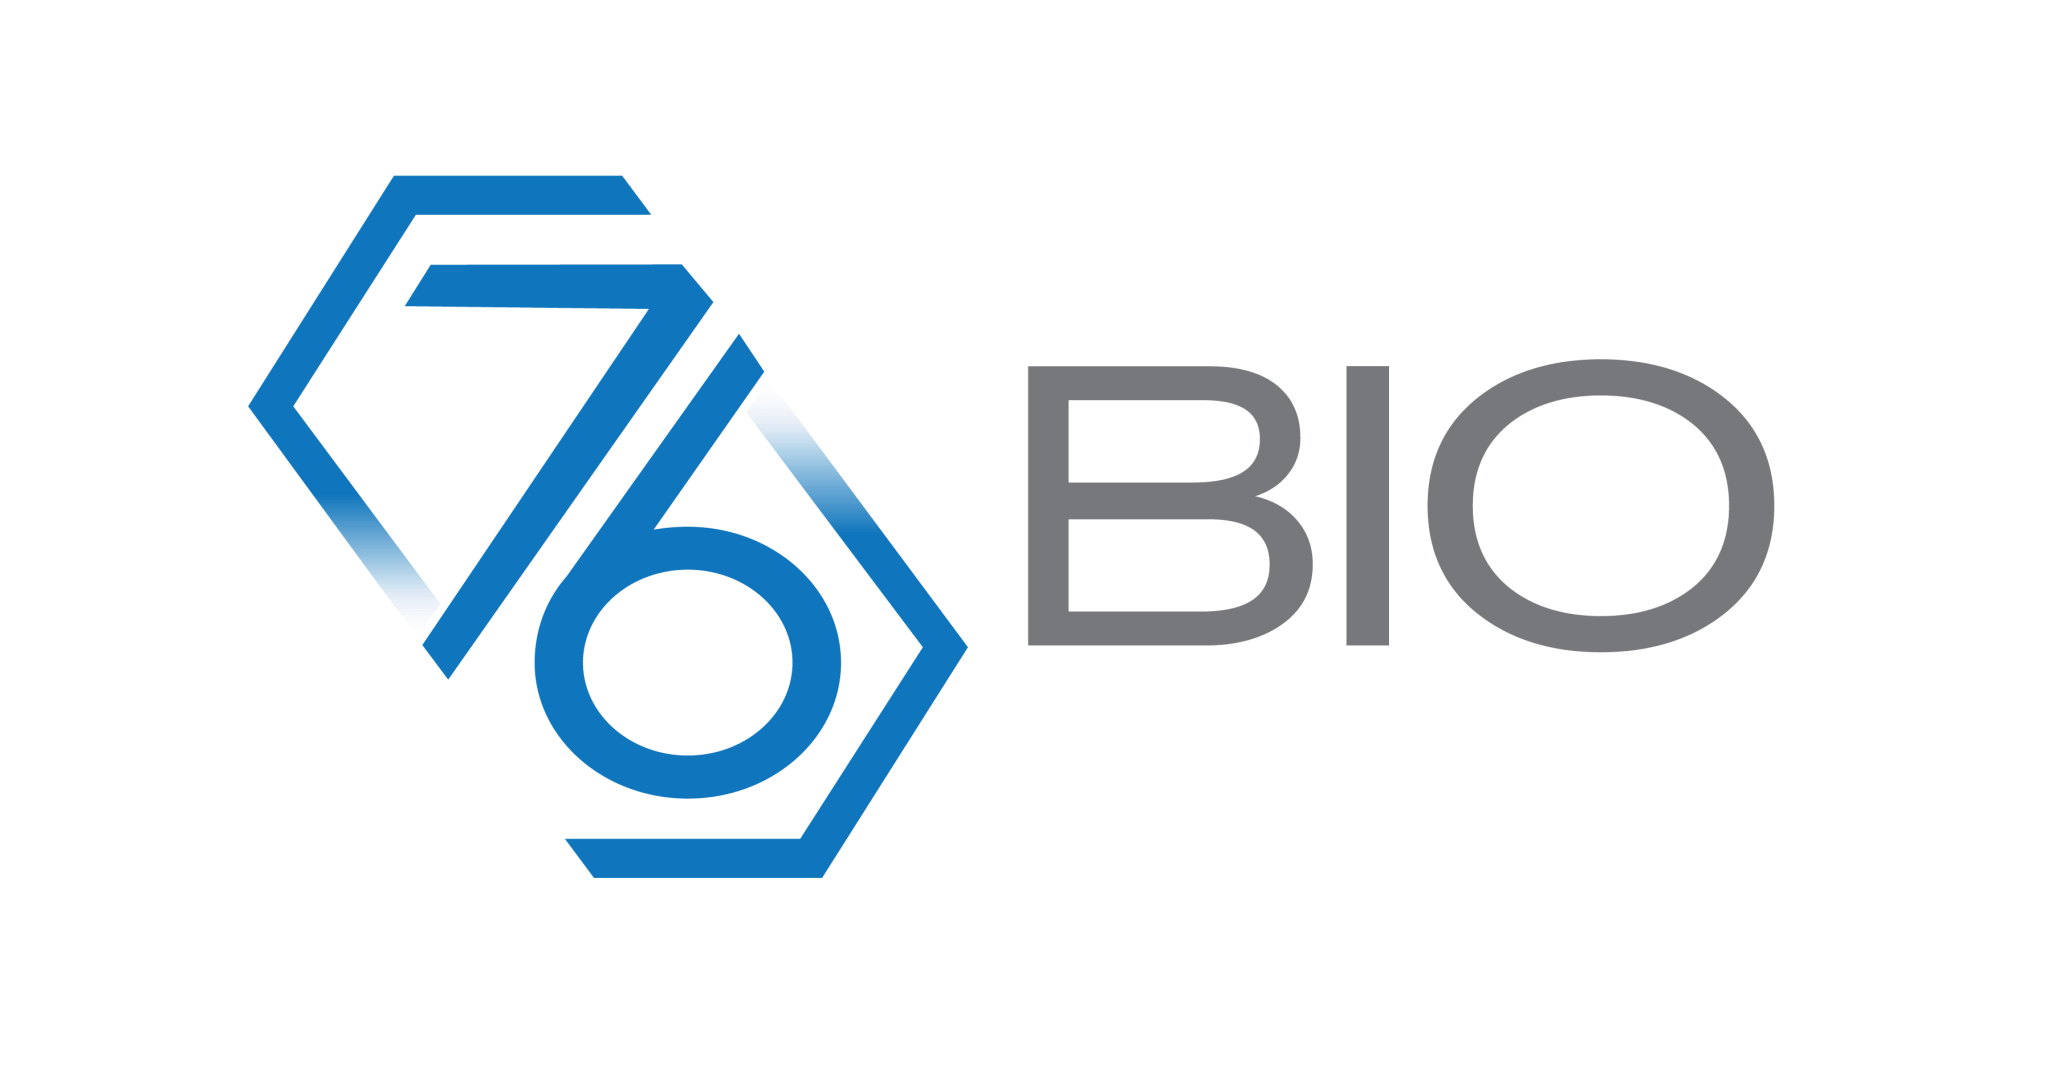 76Bio logo